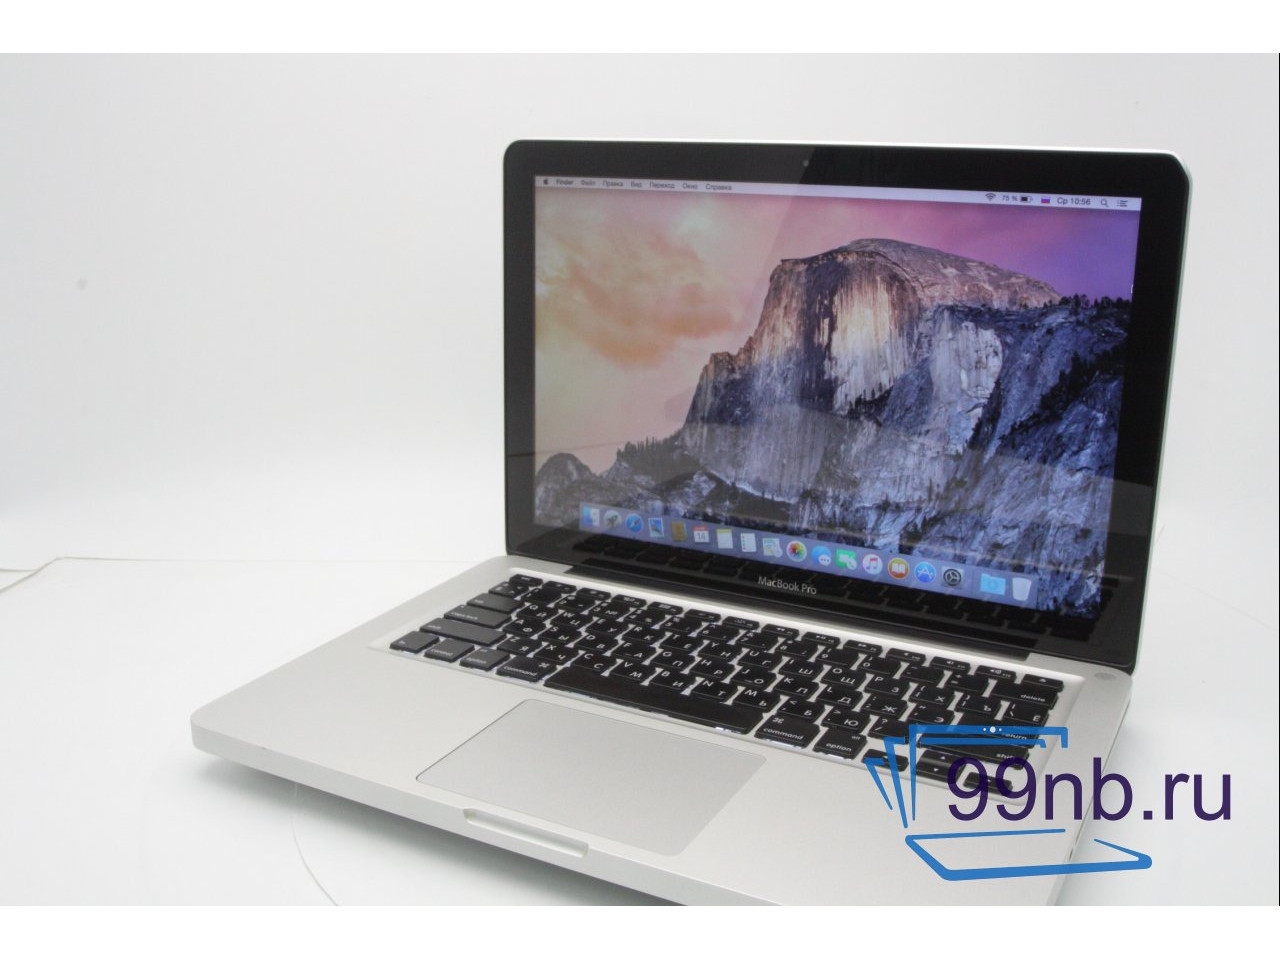 Macbook MacBook Pro (13-inch, Late 201